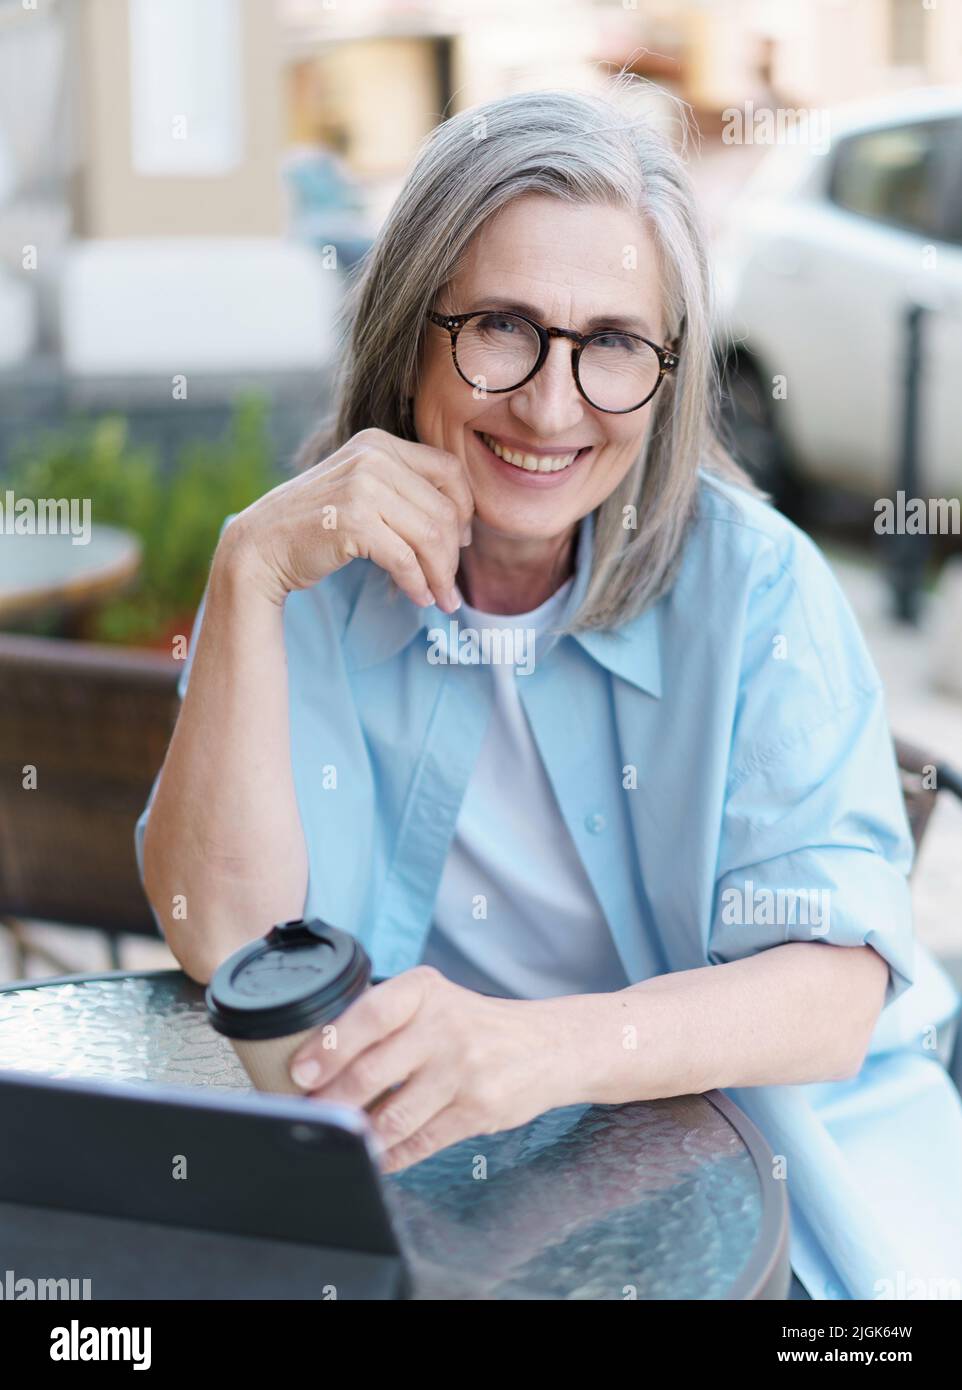 Europäische grauhaarige reife Frau trinkt Kaffee, während sie mit einem digitalen Tablet im kleinen Straßencafé im Internet surft. Reife Frau, die im Stadtcafe arbeitet und weißes T-Shirt und blaues Hemd trägt. Stockfoto